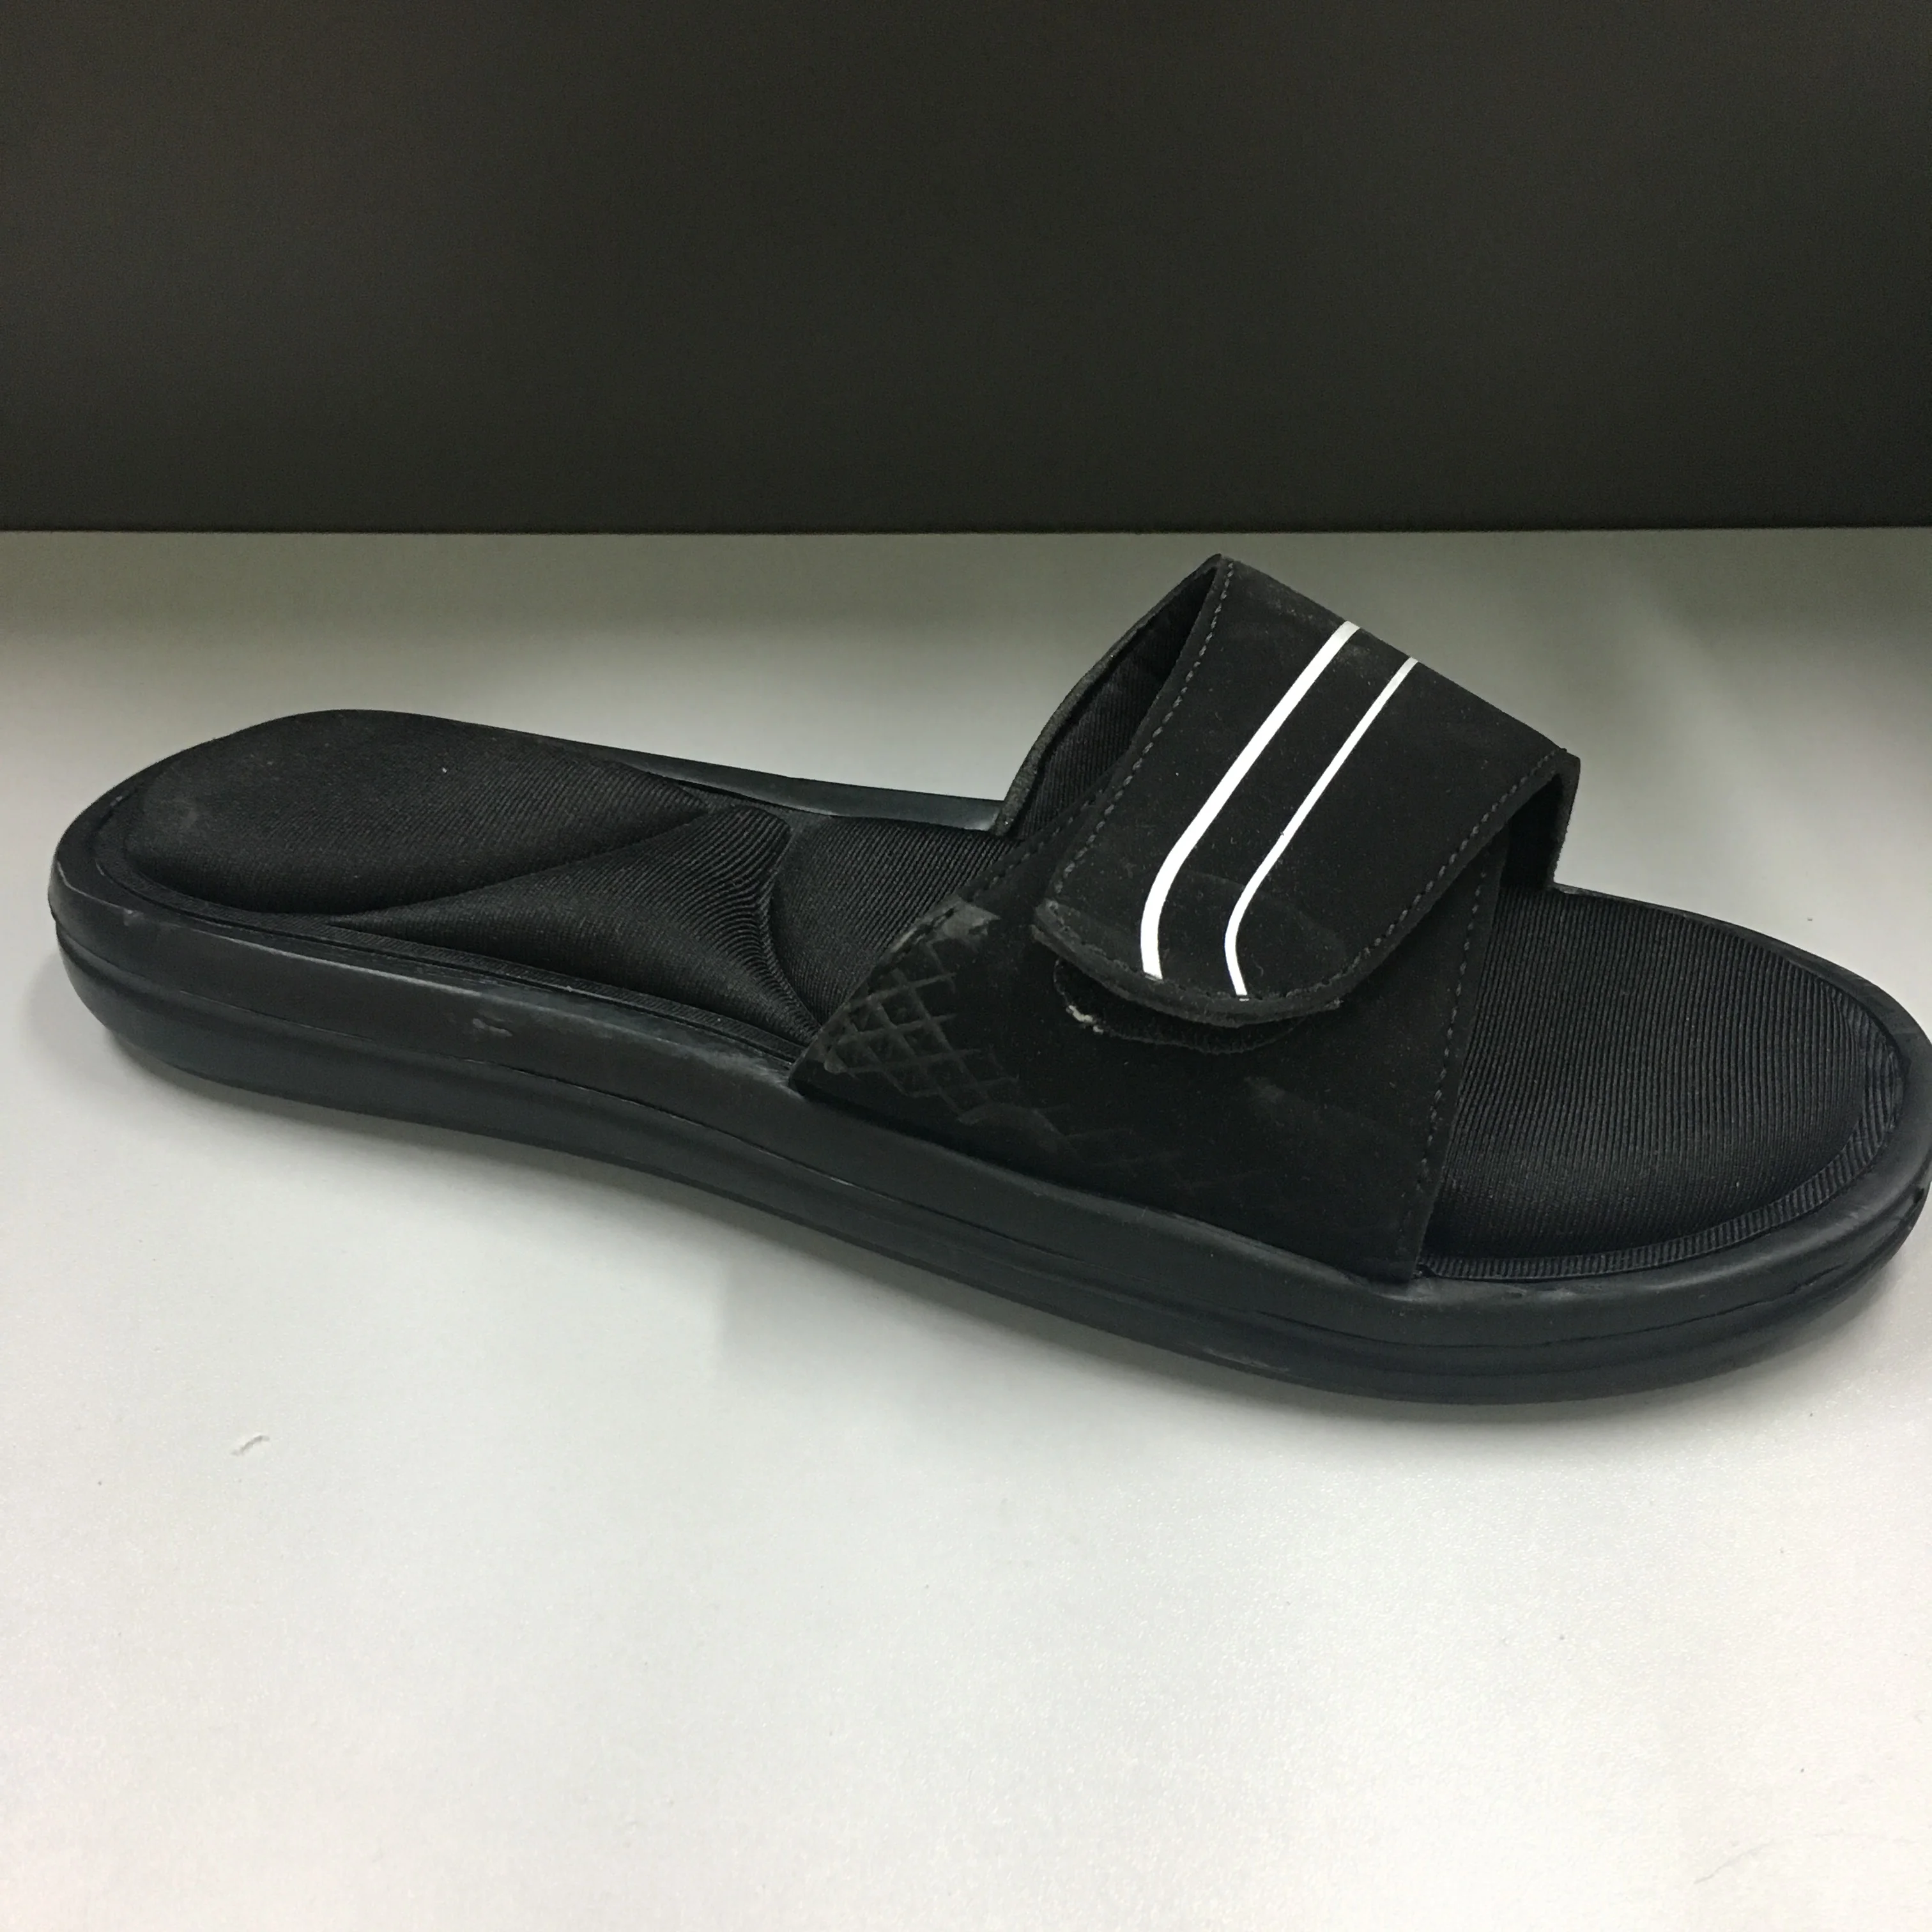 Custom Slide Men Sandals Slippers Slide Sandal Stripe Black And White ...